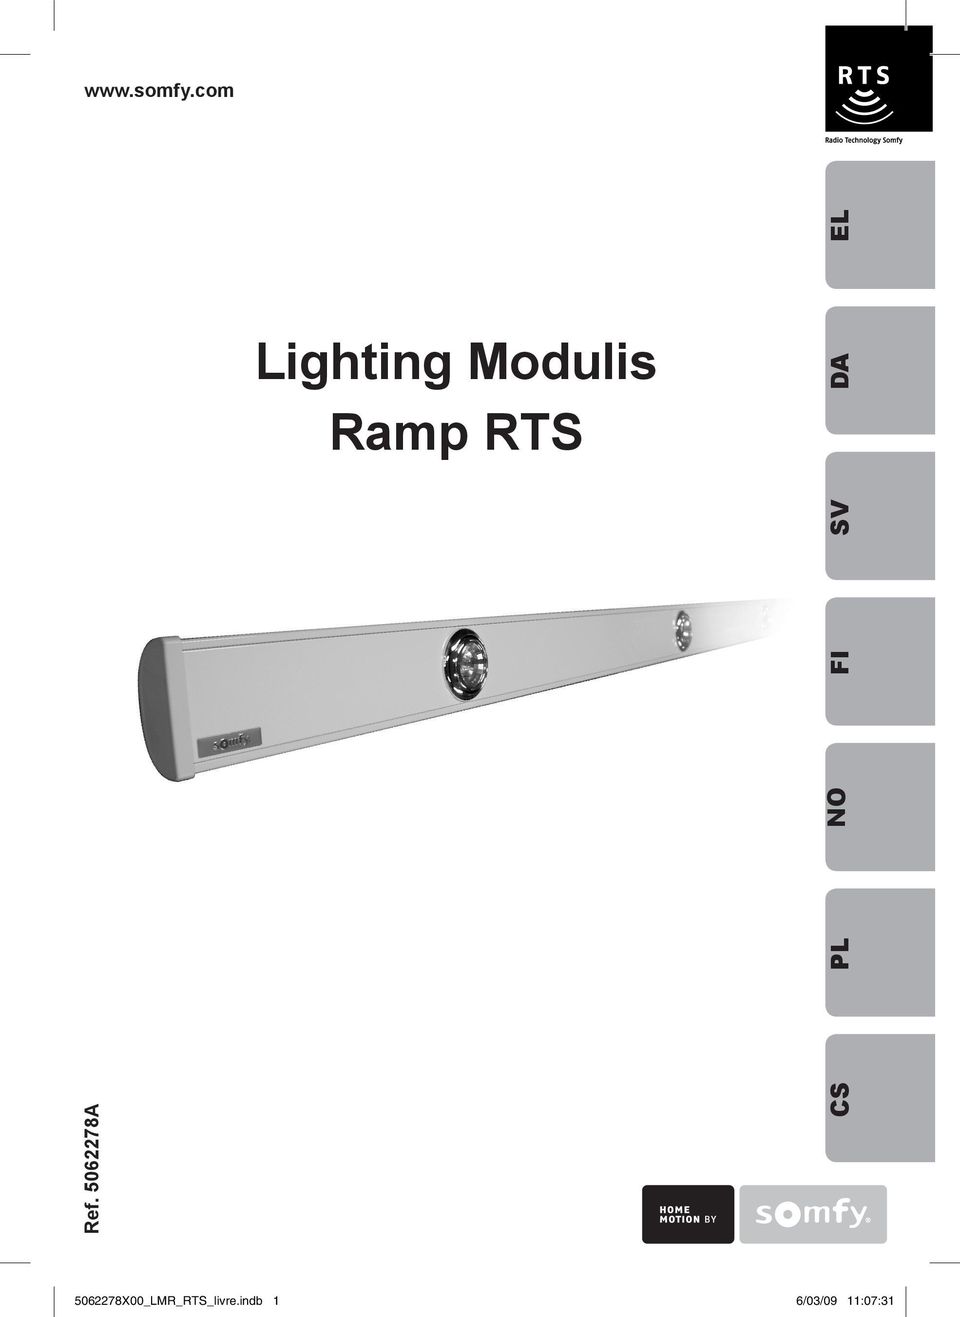 Lighting Modulis Ramp RTS